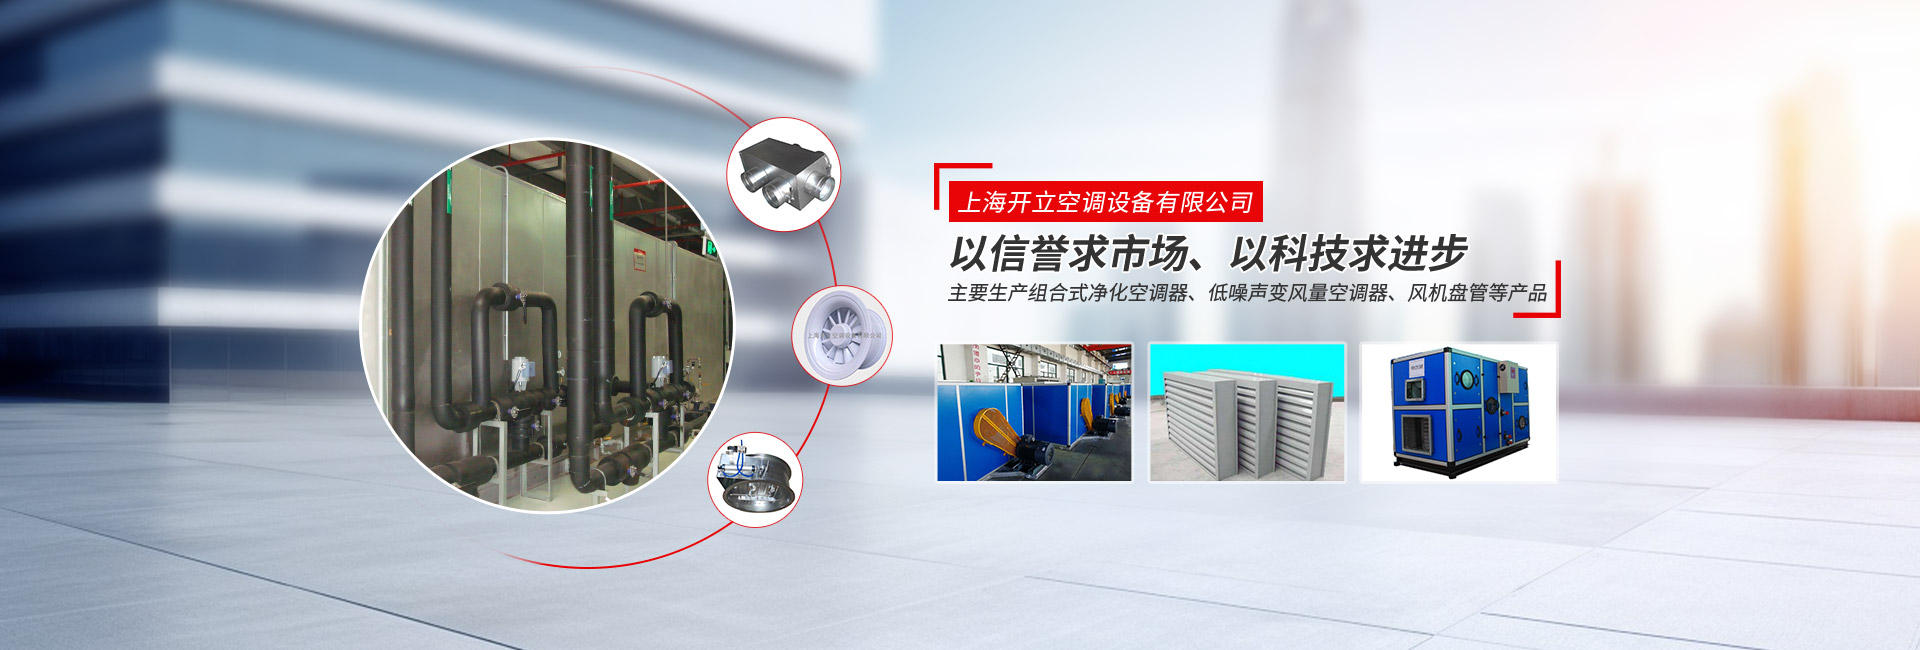 上海long8空調設備有限公司